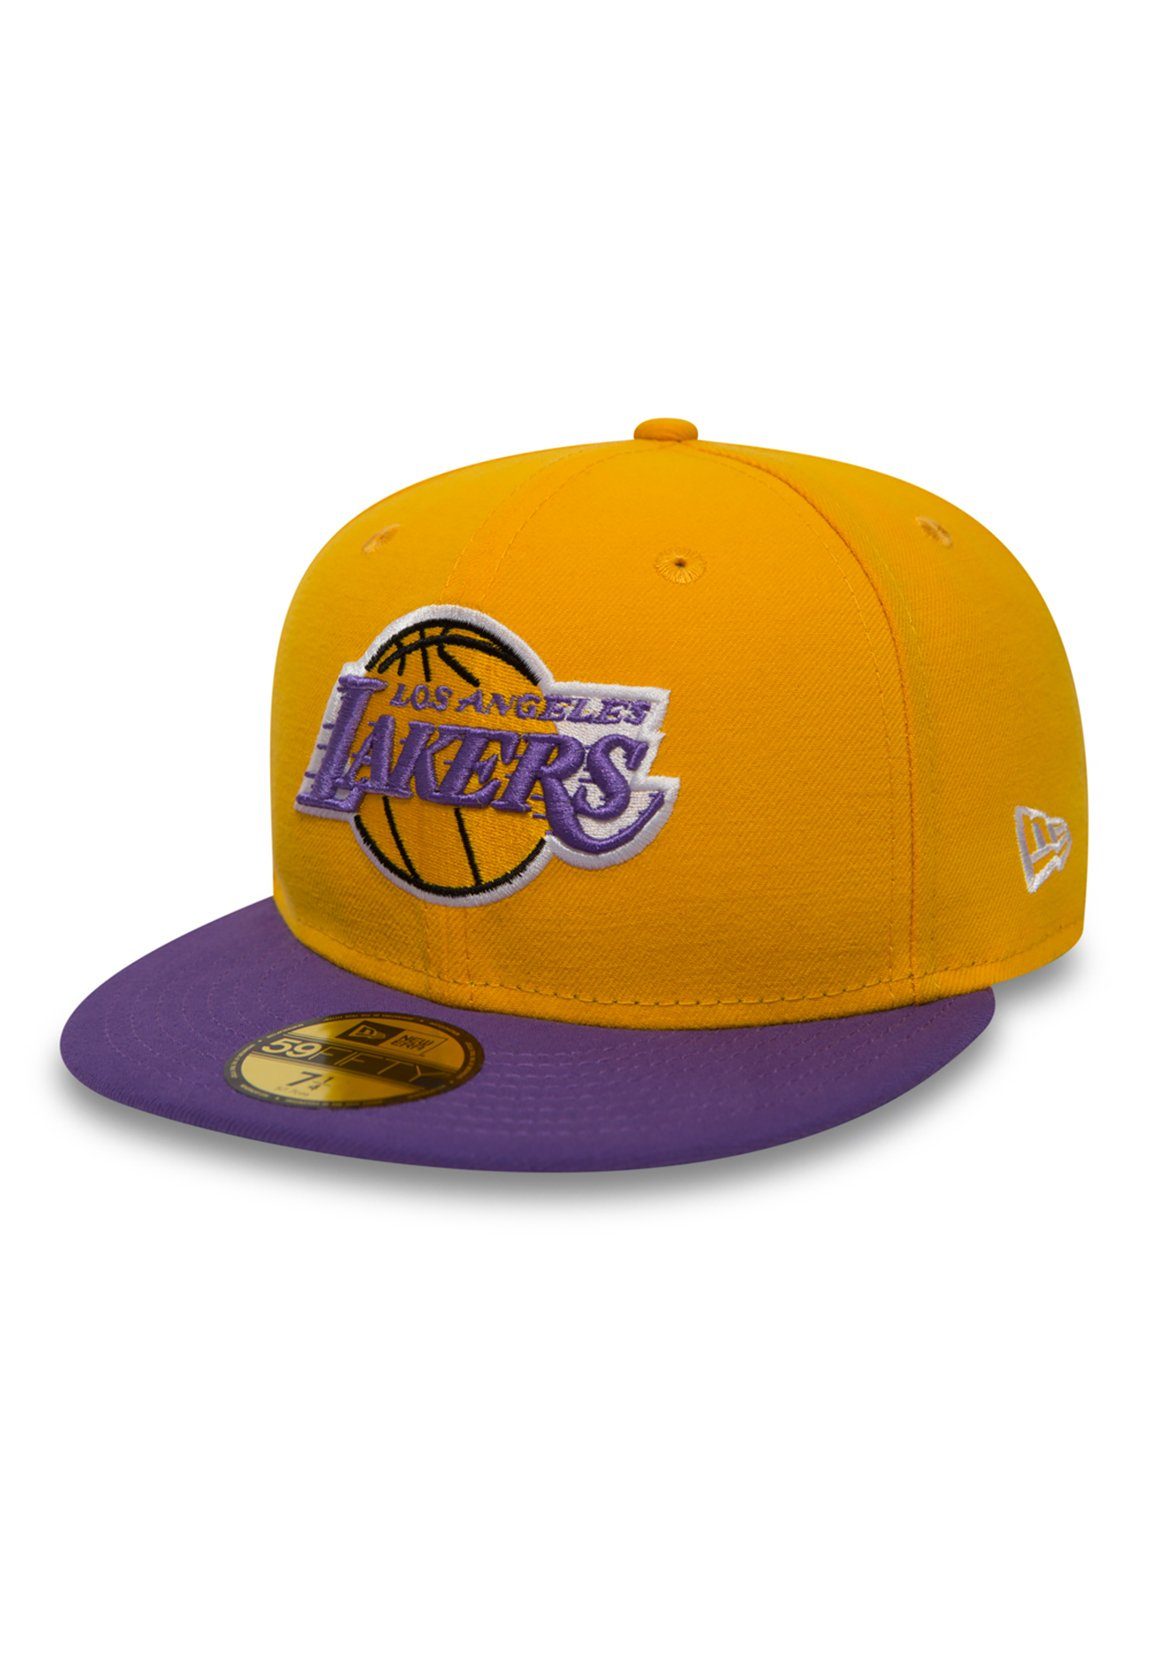 New Era Baseball Cap New Era 59Fiftys Cap - LA LAKERS - Yellow-Purple gelb | Baseball Caps